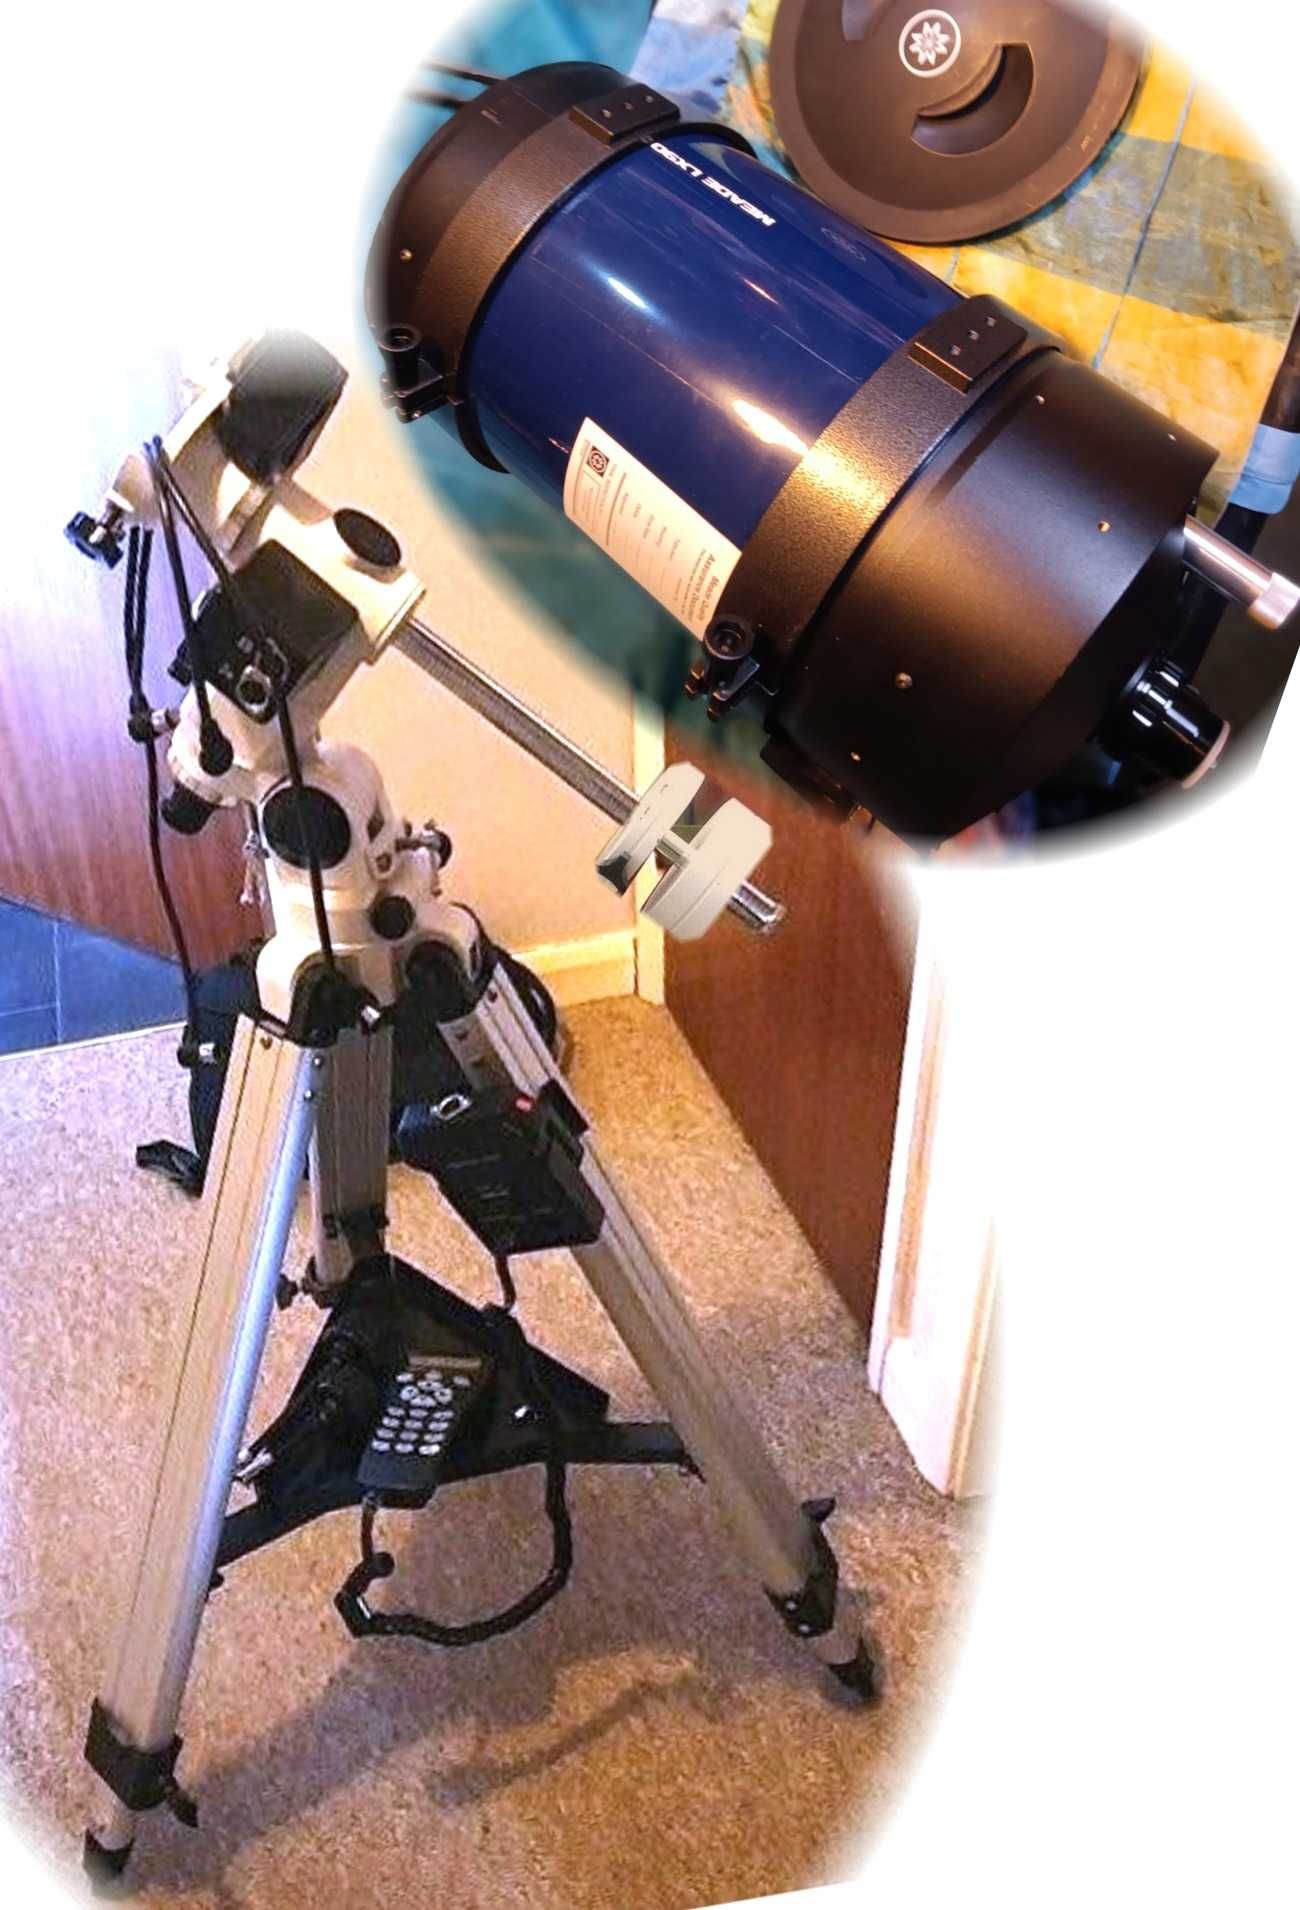 Meade LX-90 8", само телескоп OTA или+AZ/EQ/GoTo компютърна монтировка